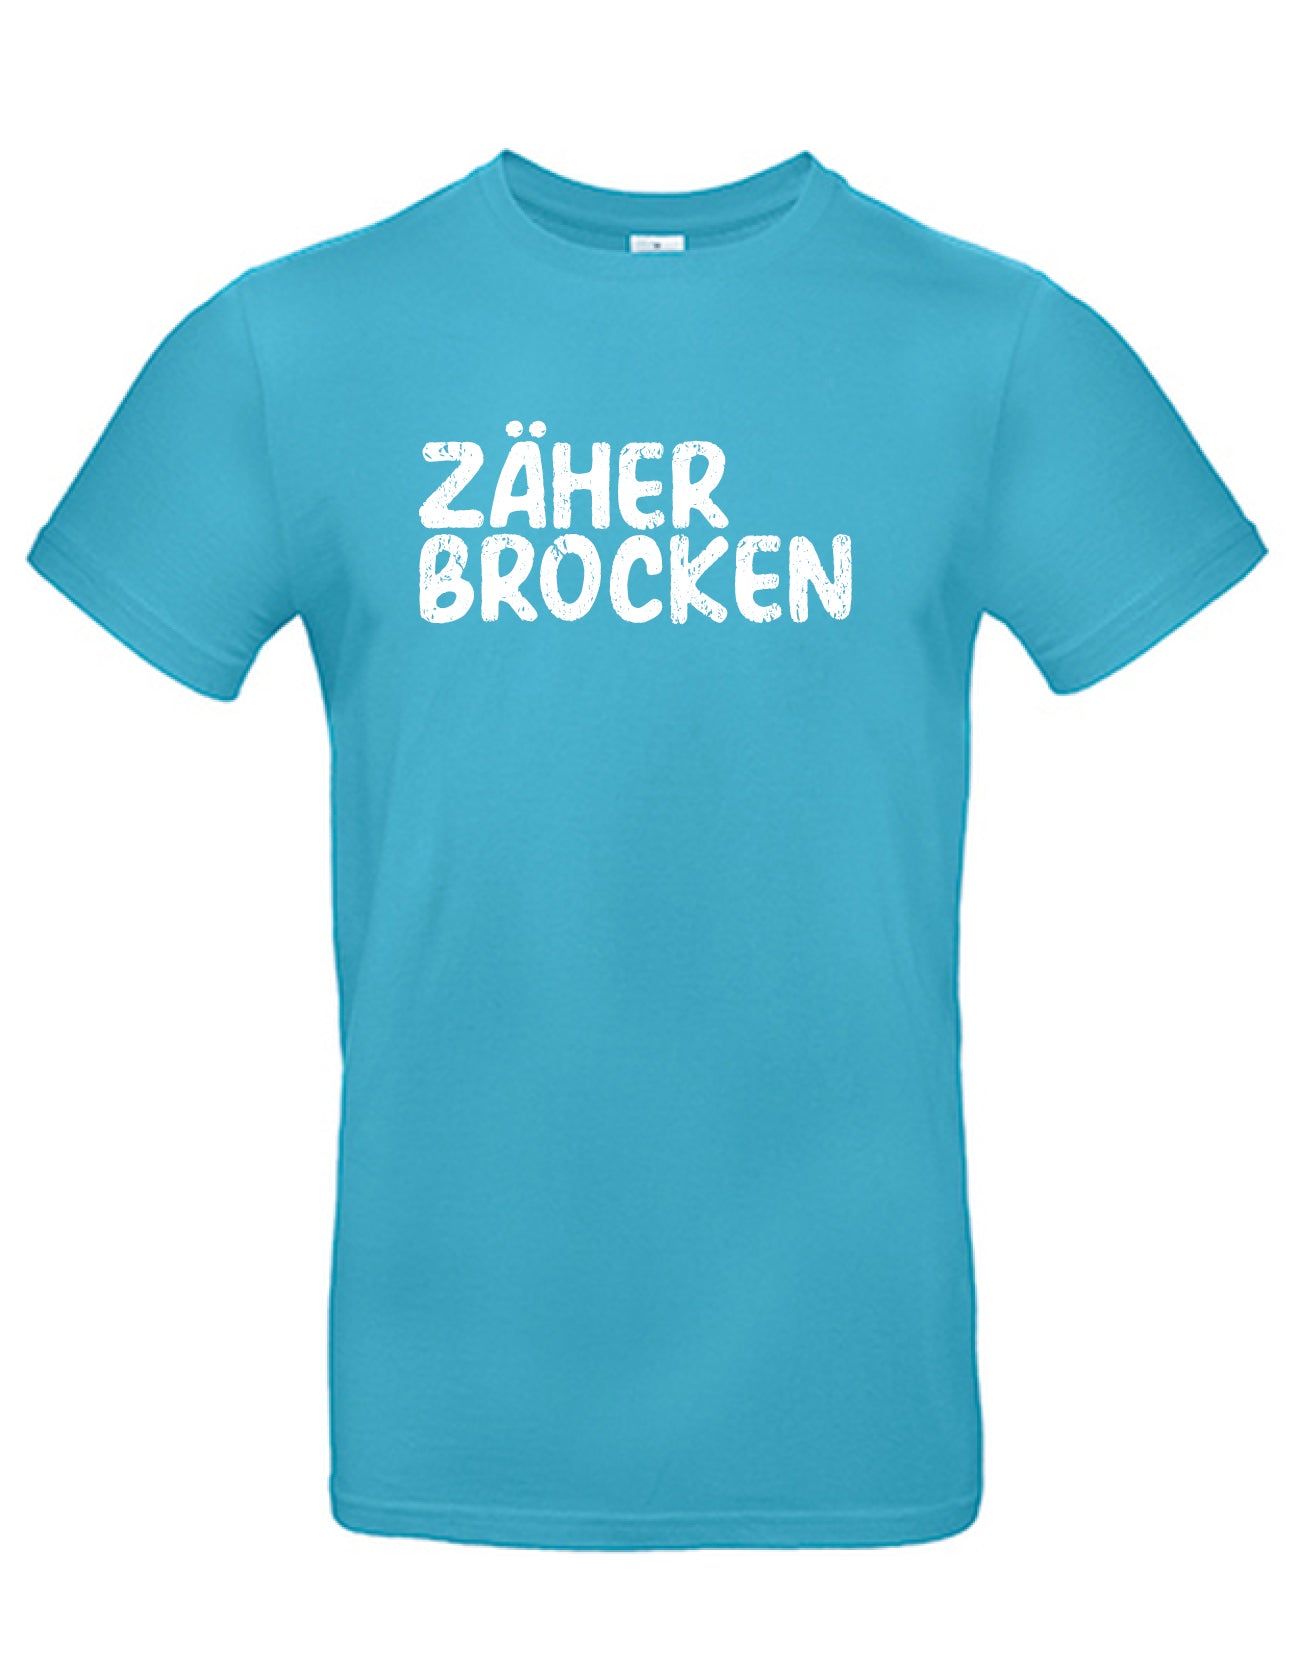 T-Shirt Männer >> ZÄHER BROCKEN